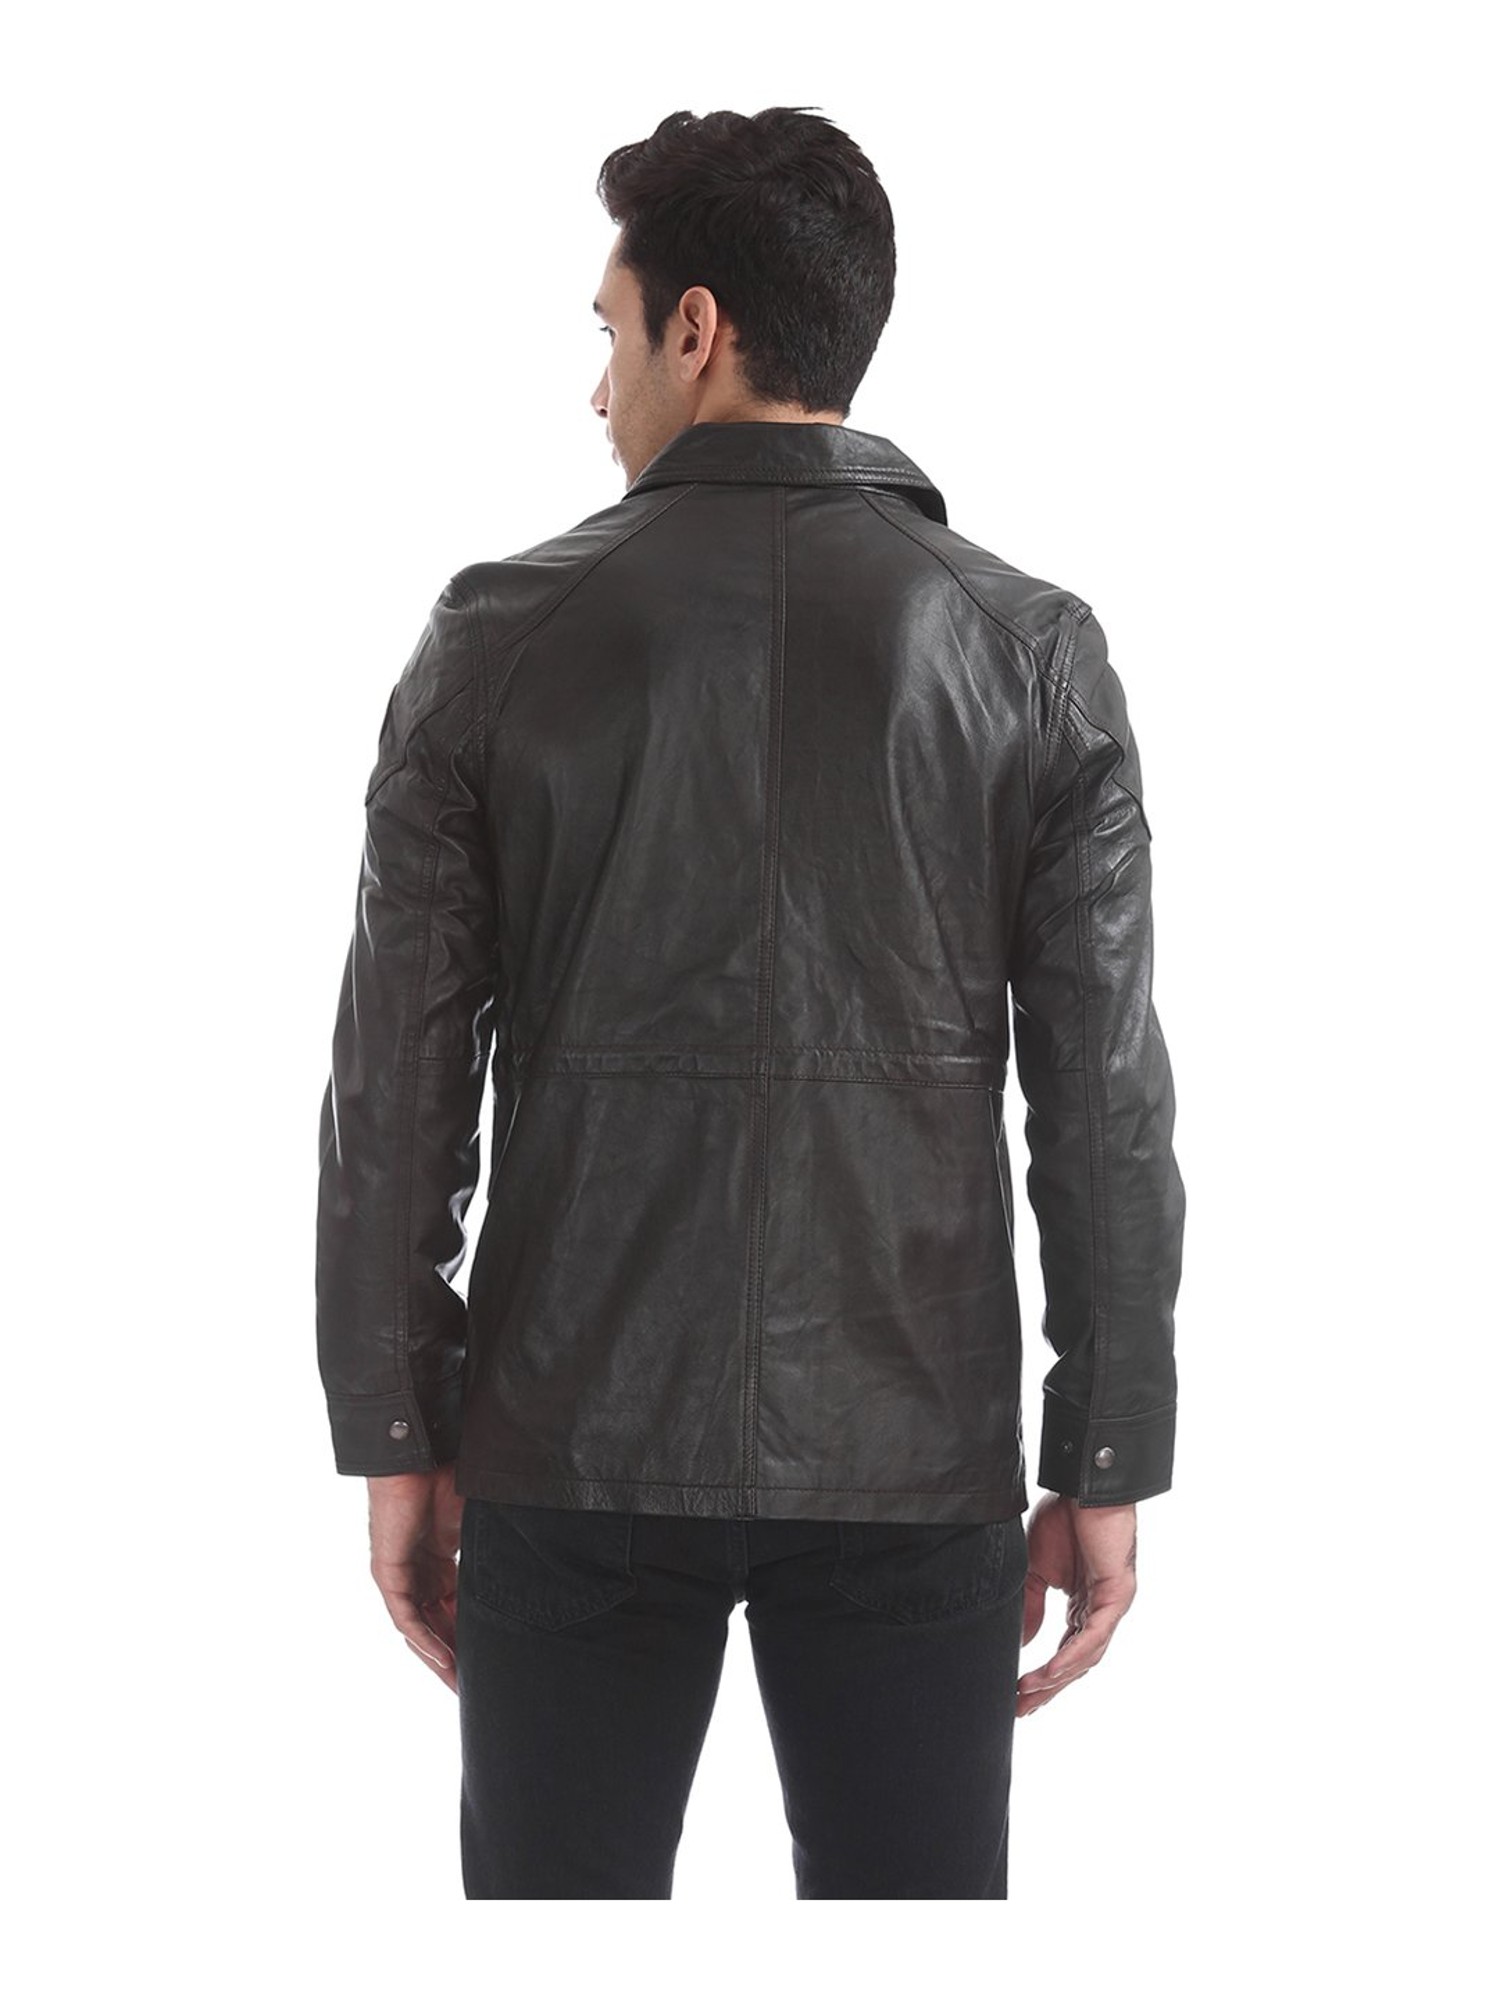 Buy U.S. POLO ASSN. Men's Blouson Jacket UDJK0022_Black_M FS at Amazon.in